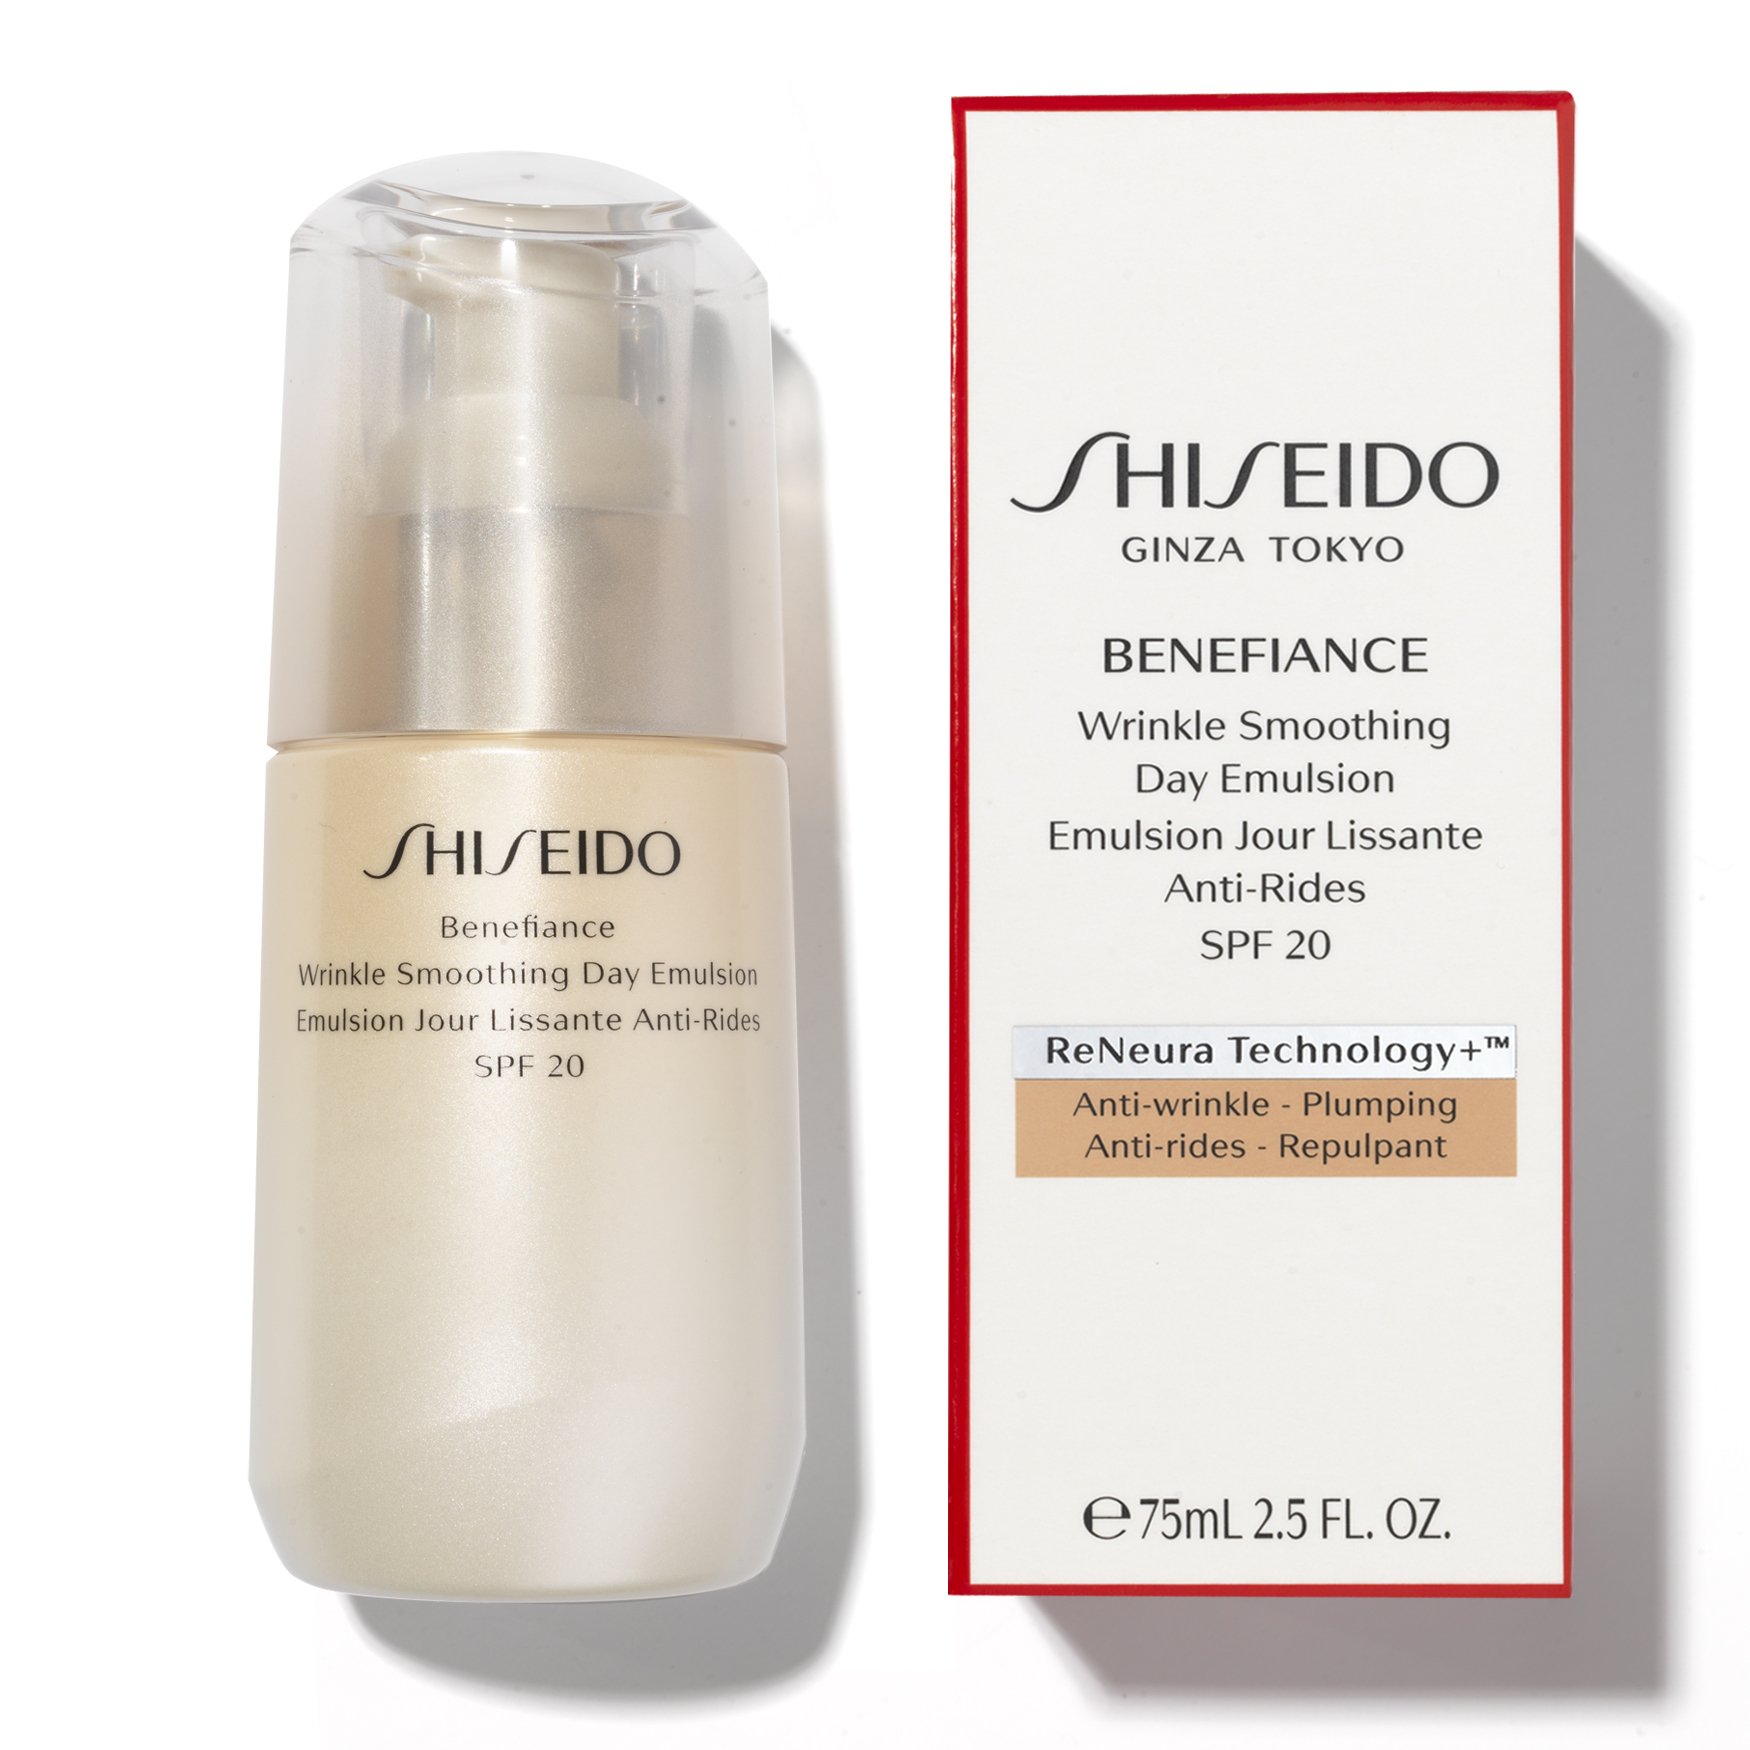 Shiseido benefiance wrinkle smoothing. Shiseido Benefiance Wrinkle Smoothing Day Emulsion SPF 20. Shiseido Benefiance Wrinkle Smoothing Day Emulsion SPF 20 состав. Shiseido Wrinkle Smoothing Cream. Shiseido Benefiance Wrinkle Smoothing Cream enriched.